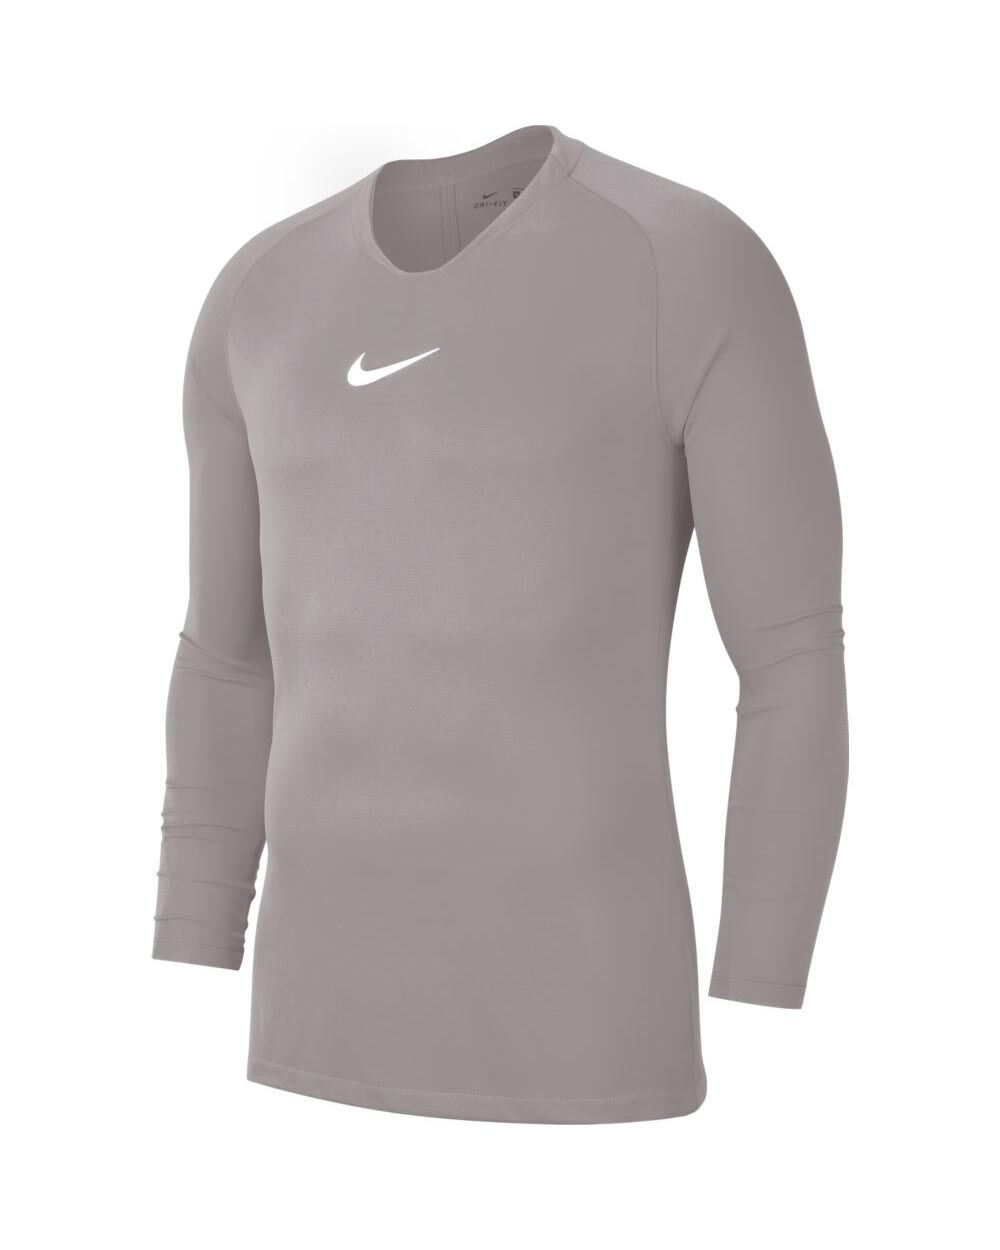 Camiseta interior Nike Park First Layer Gris para Hombre - AV2609-057